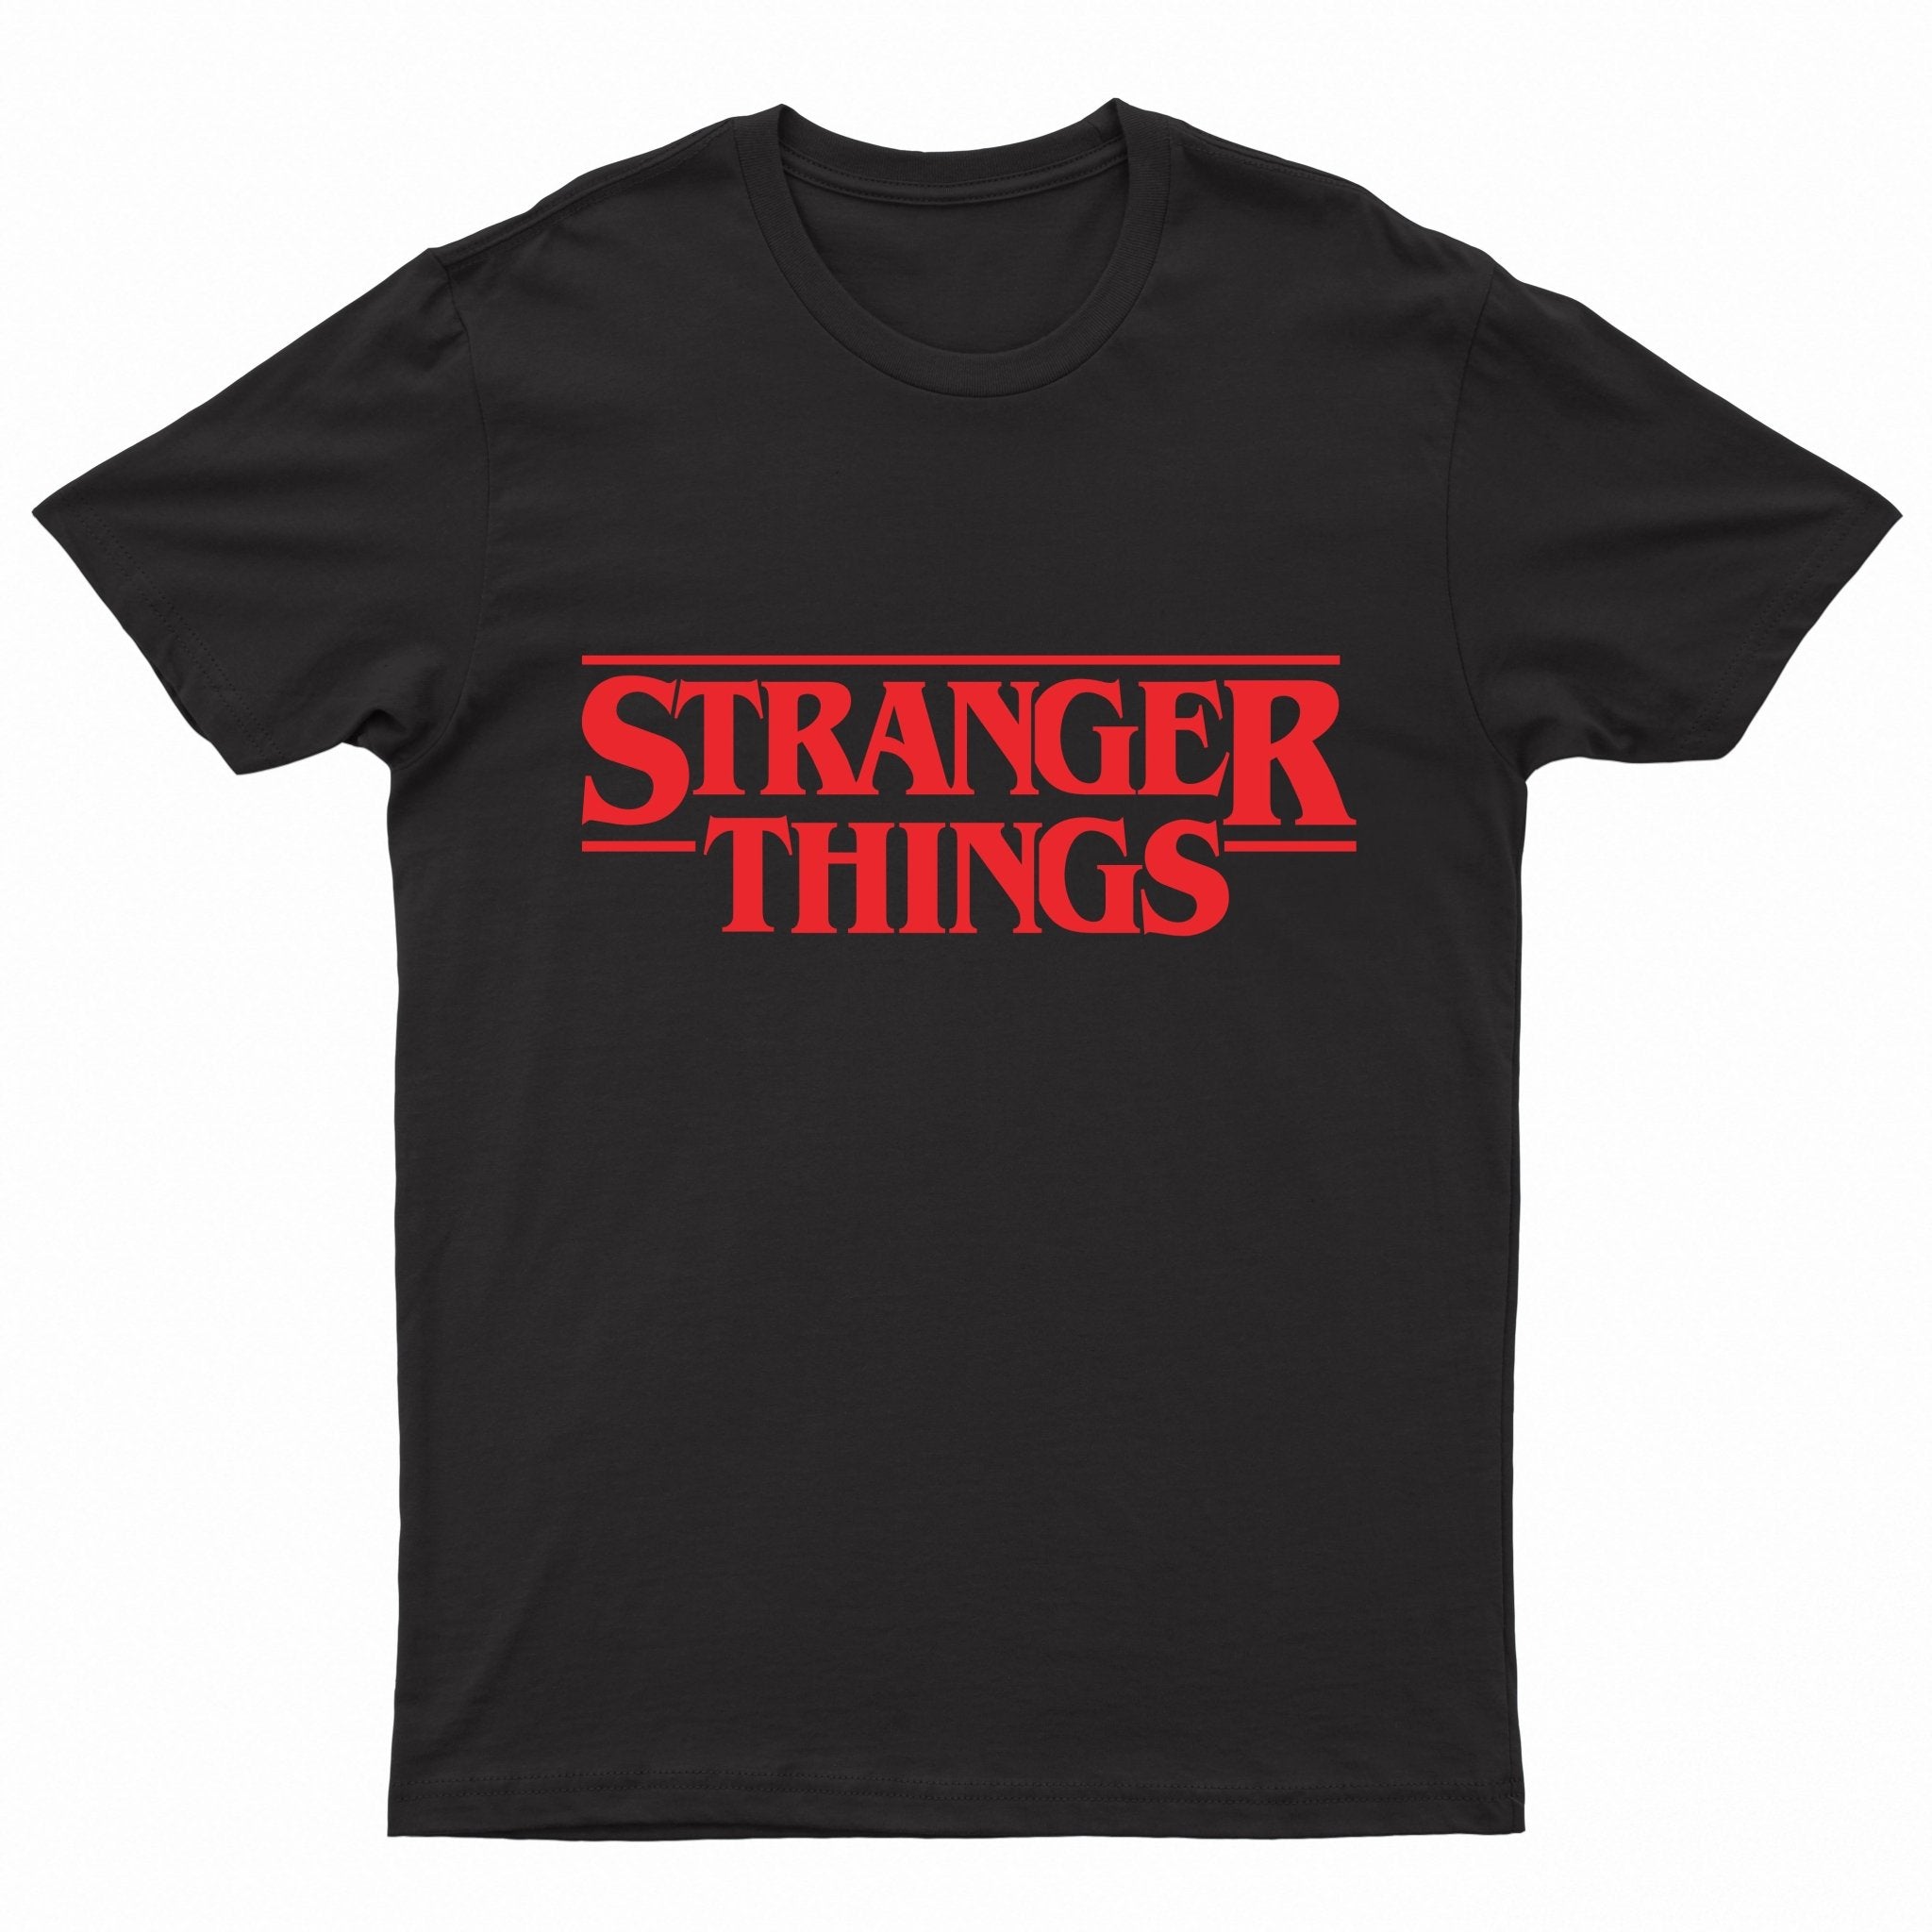 Paperboi Stranger Things T-shirt - Black - قميص - Store 974 | ستور ٩٧٤